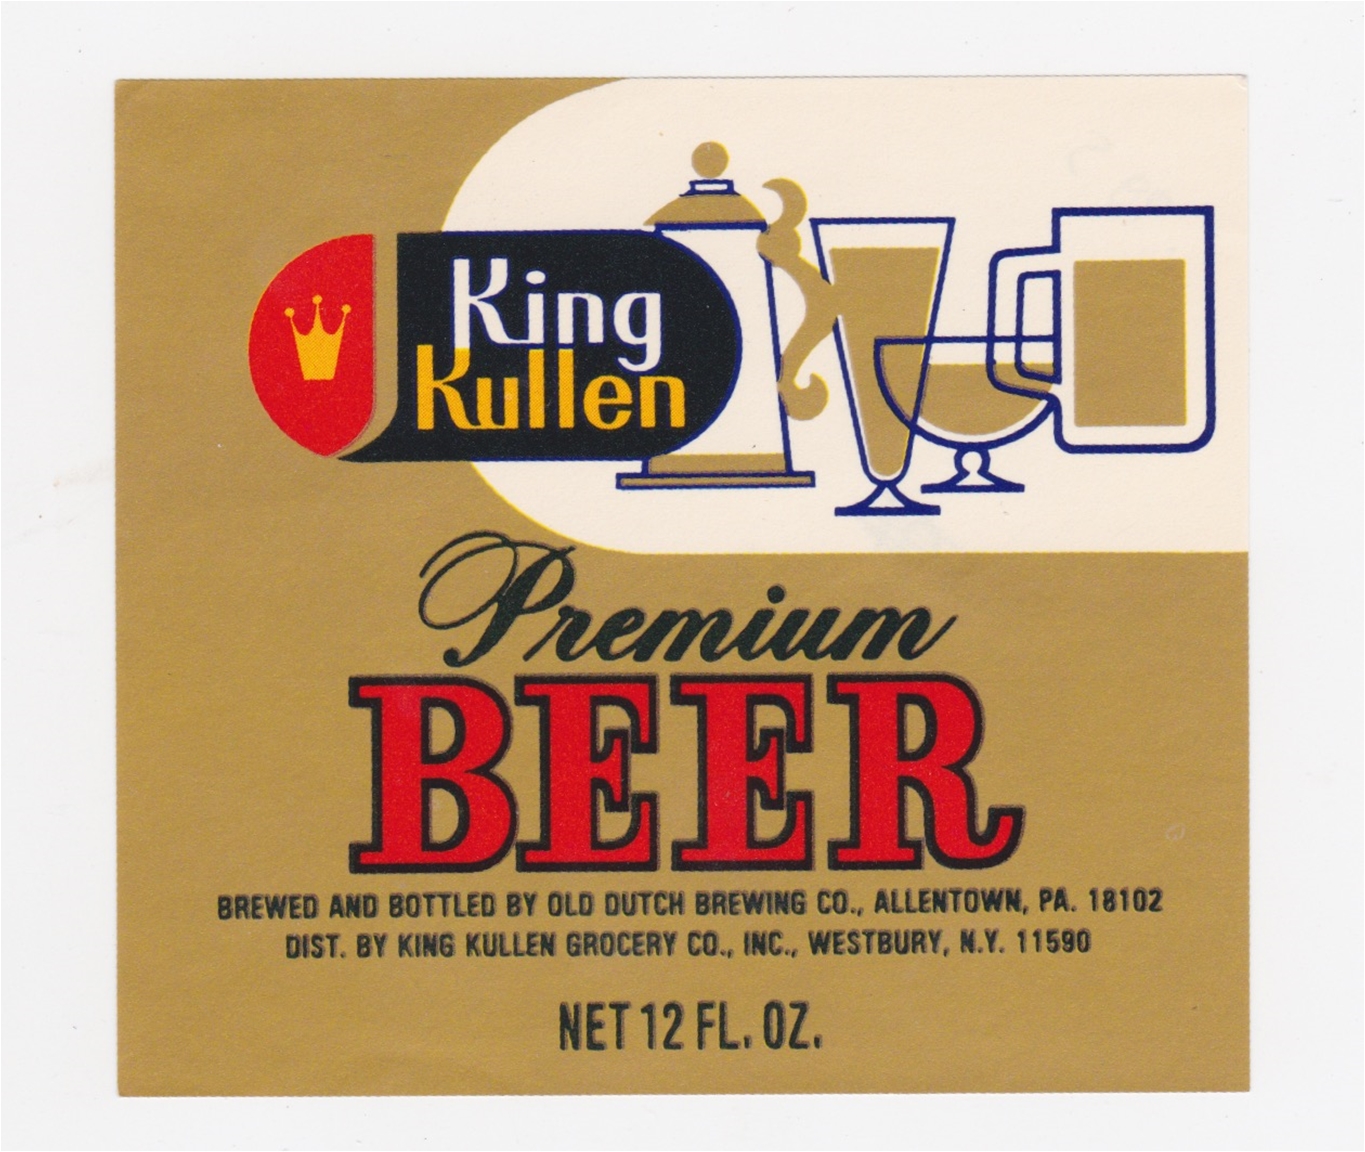 King Kullen Premium Beer Label